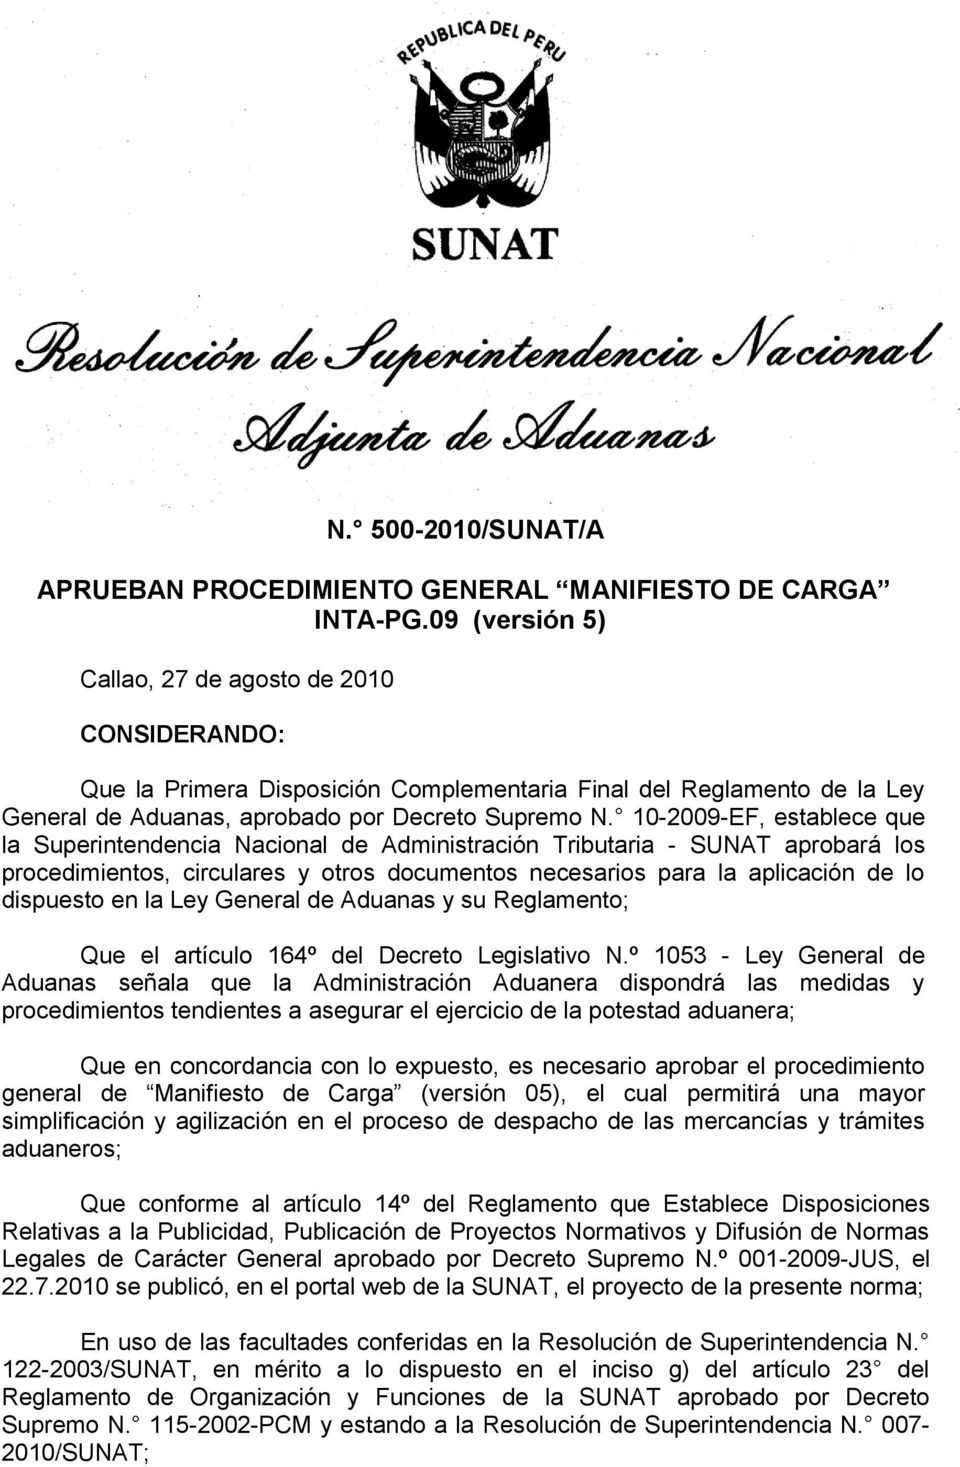 10-2009-EF, establece que la Superintendencia Nacional de Administración Tributaria - SUNAT aprobará los procedimientos, circulares y otros documentos necesarios para la aplicación de lo dispuesto en